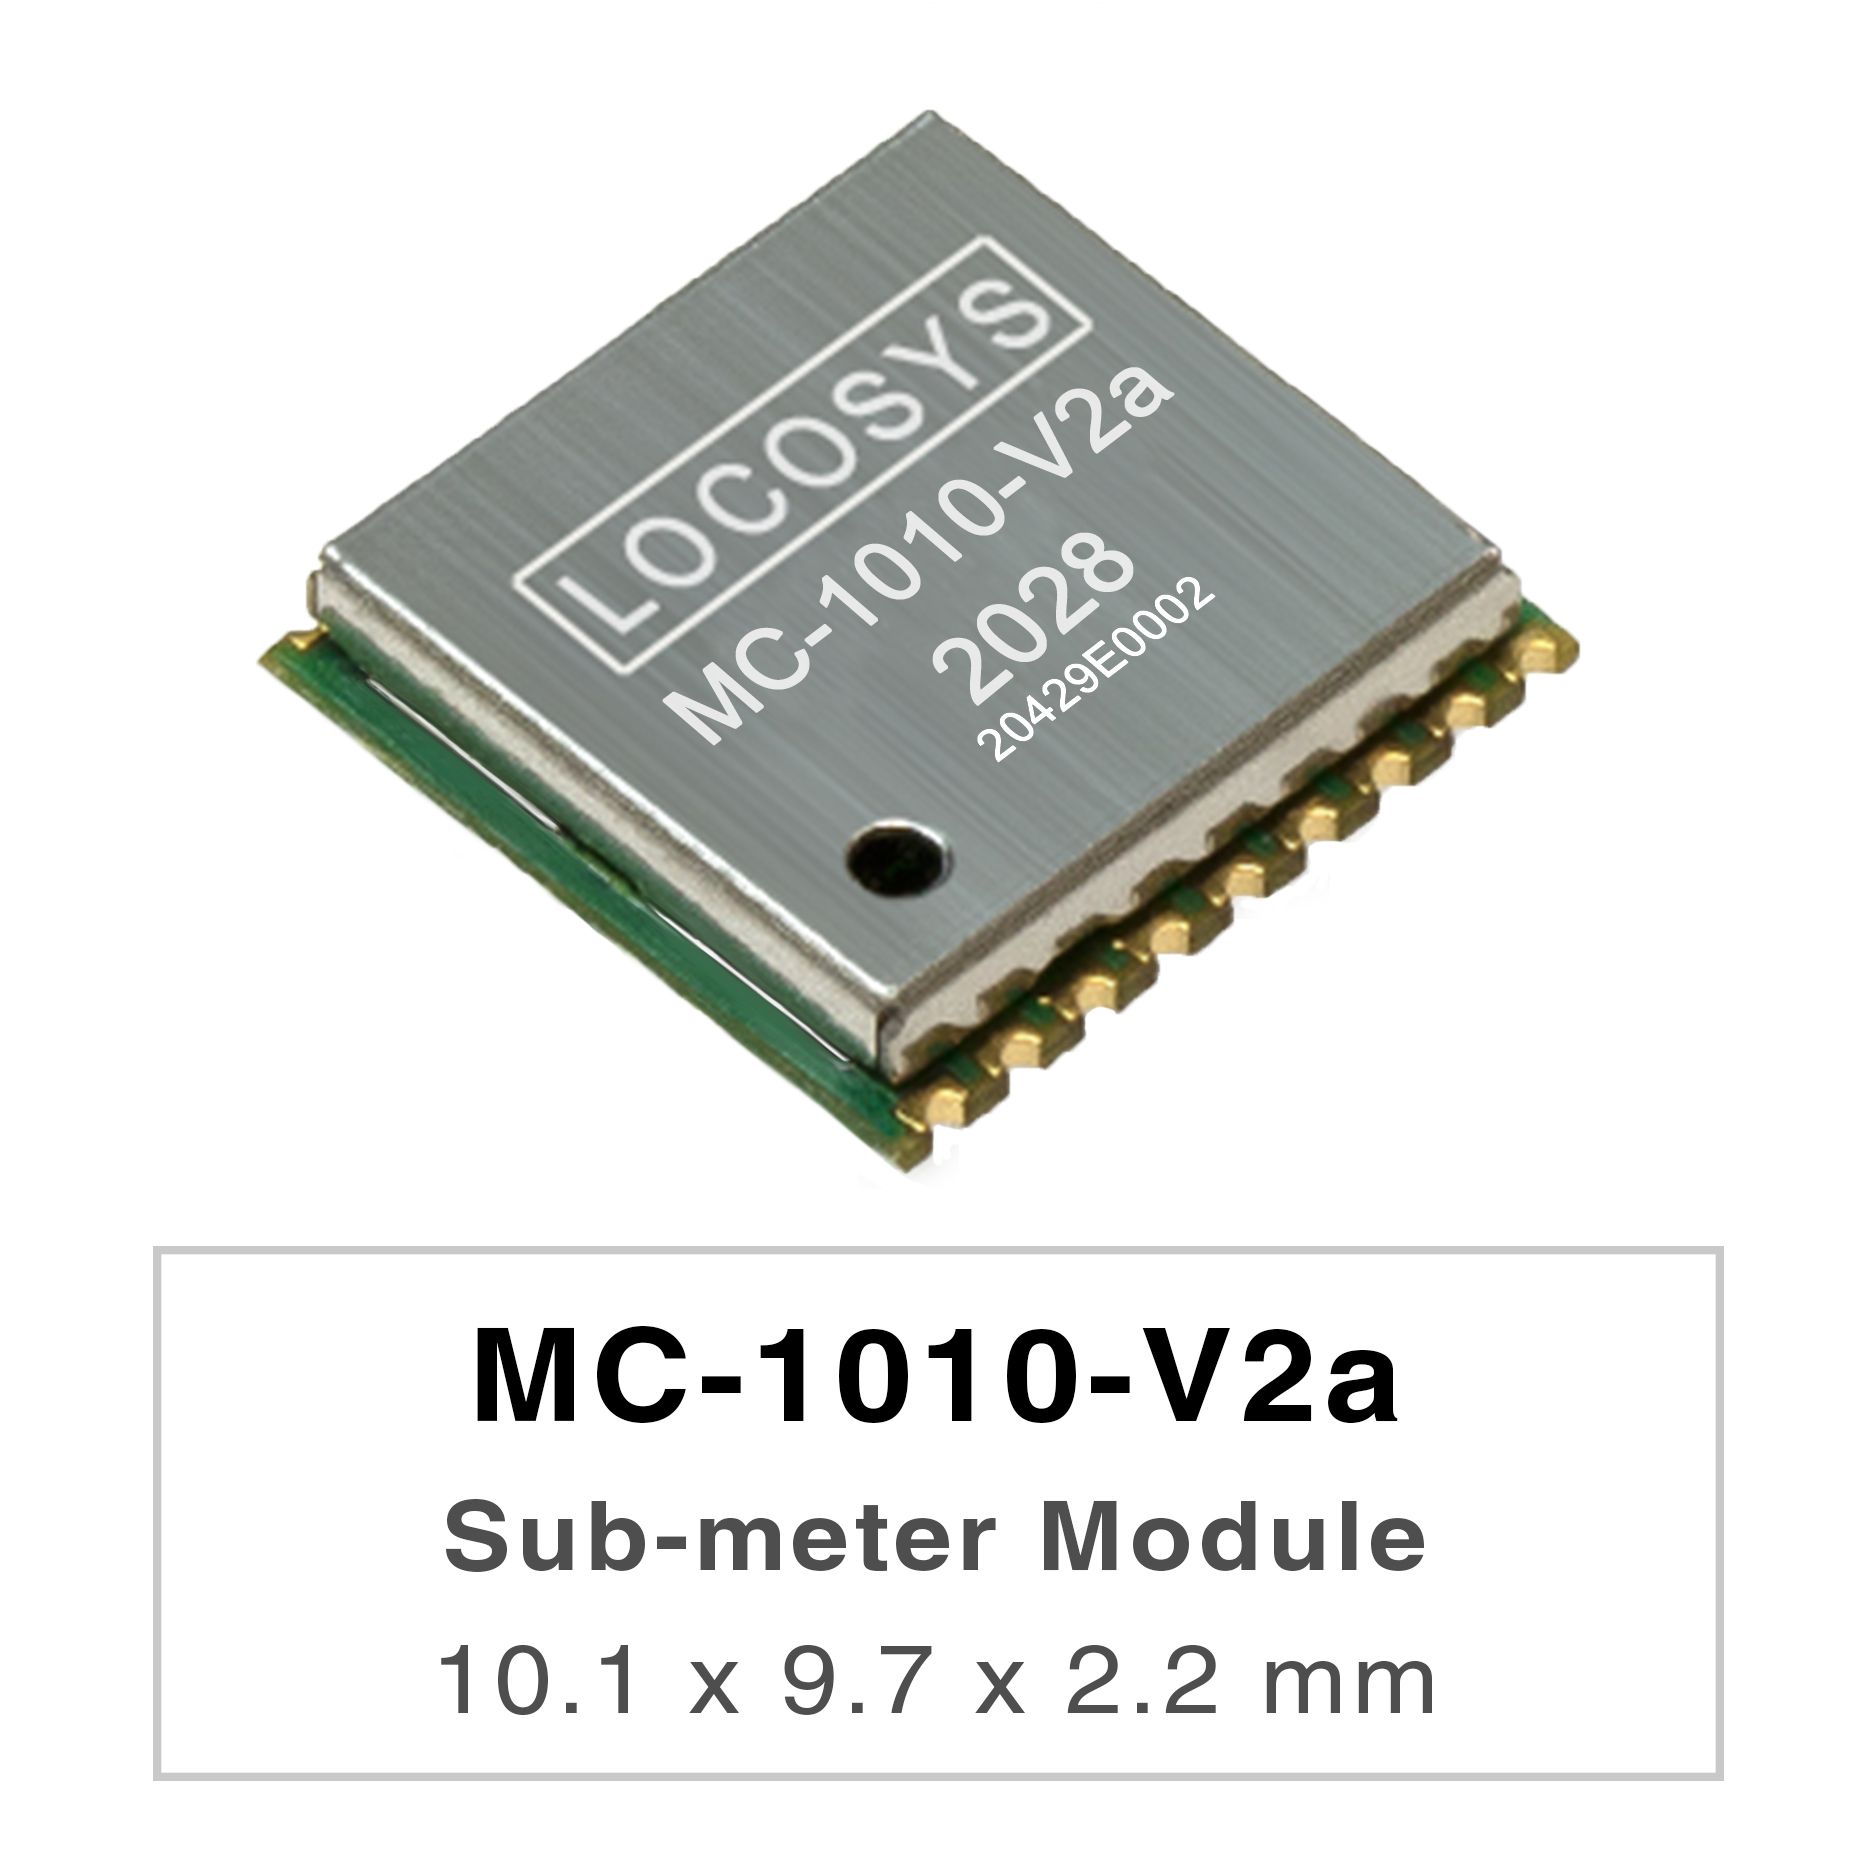 Die LOCOSYS MC-1010-Vxx-Serie sind Hochleistungs-Dualband-GNSS-Positionierungsmodule, die
<br />in der Lage sind, alle globalen zivilen Navigationssysteme zu verfolgen. Sie verwenden einen 12-nm-Prozess und integrieren eine effiziente
<br />Energieverwaltungsarchitektur, um einen geringen Stromverbrauch und eine hohe Empfindlichkeit zu erzielen.